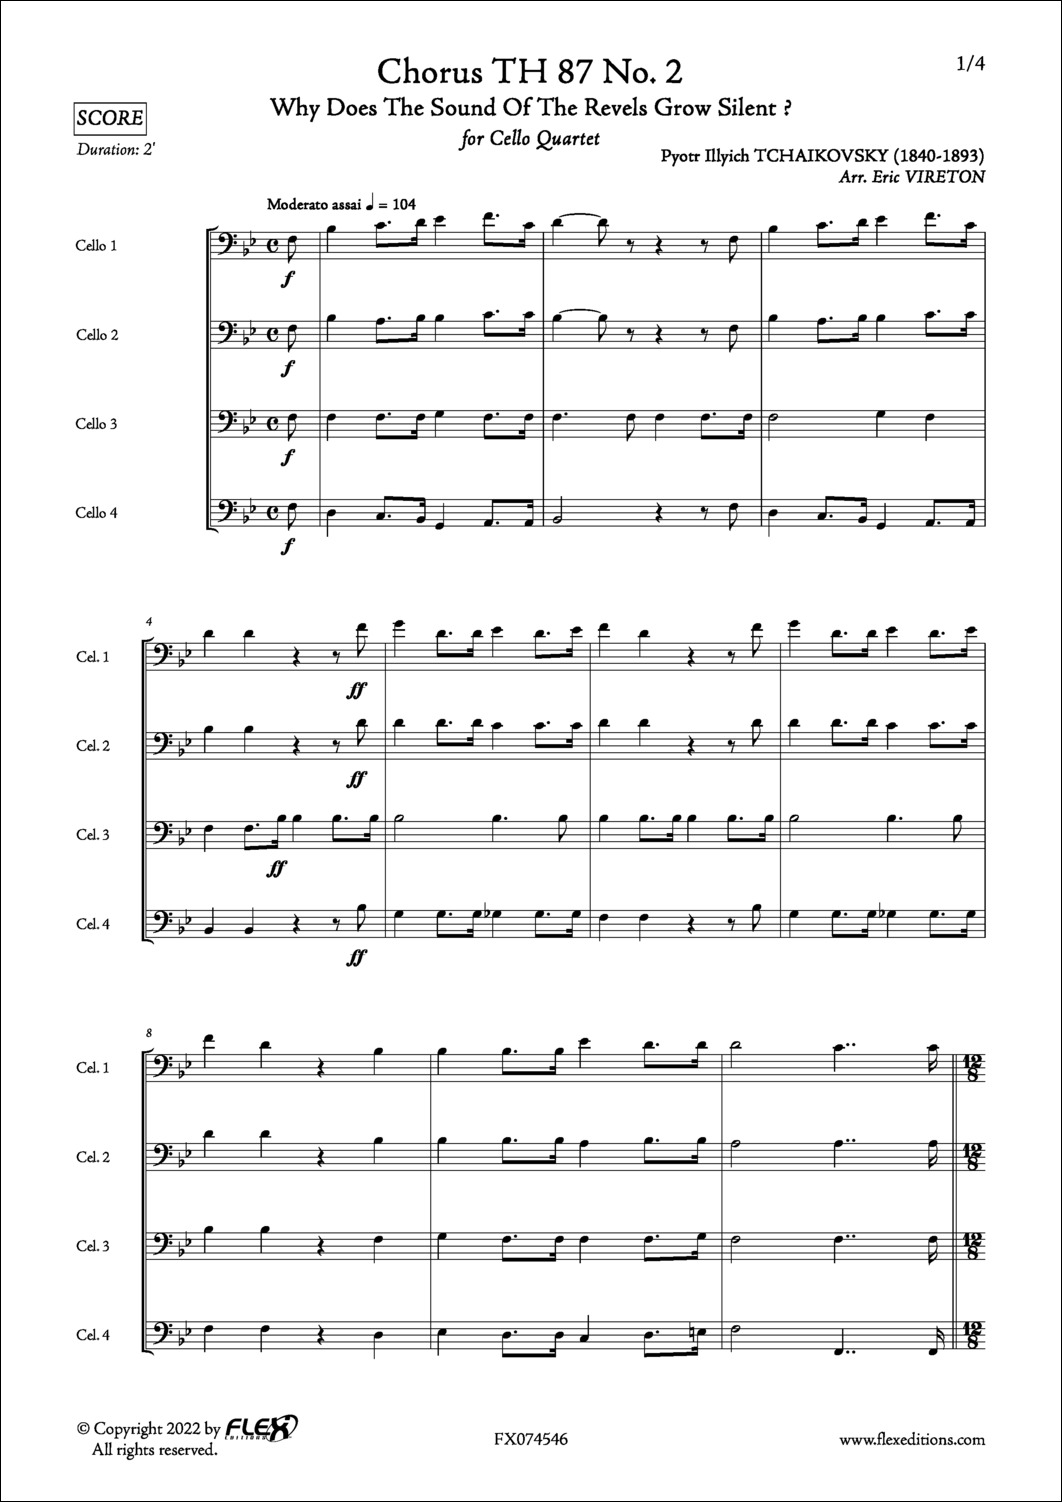 Choeur TH 87 No. 2 - P. I. TCHAIKOVSKY - <font color=#666666>Quatuor de Violoncelles</font>